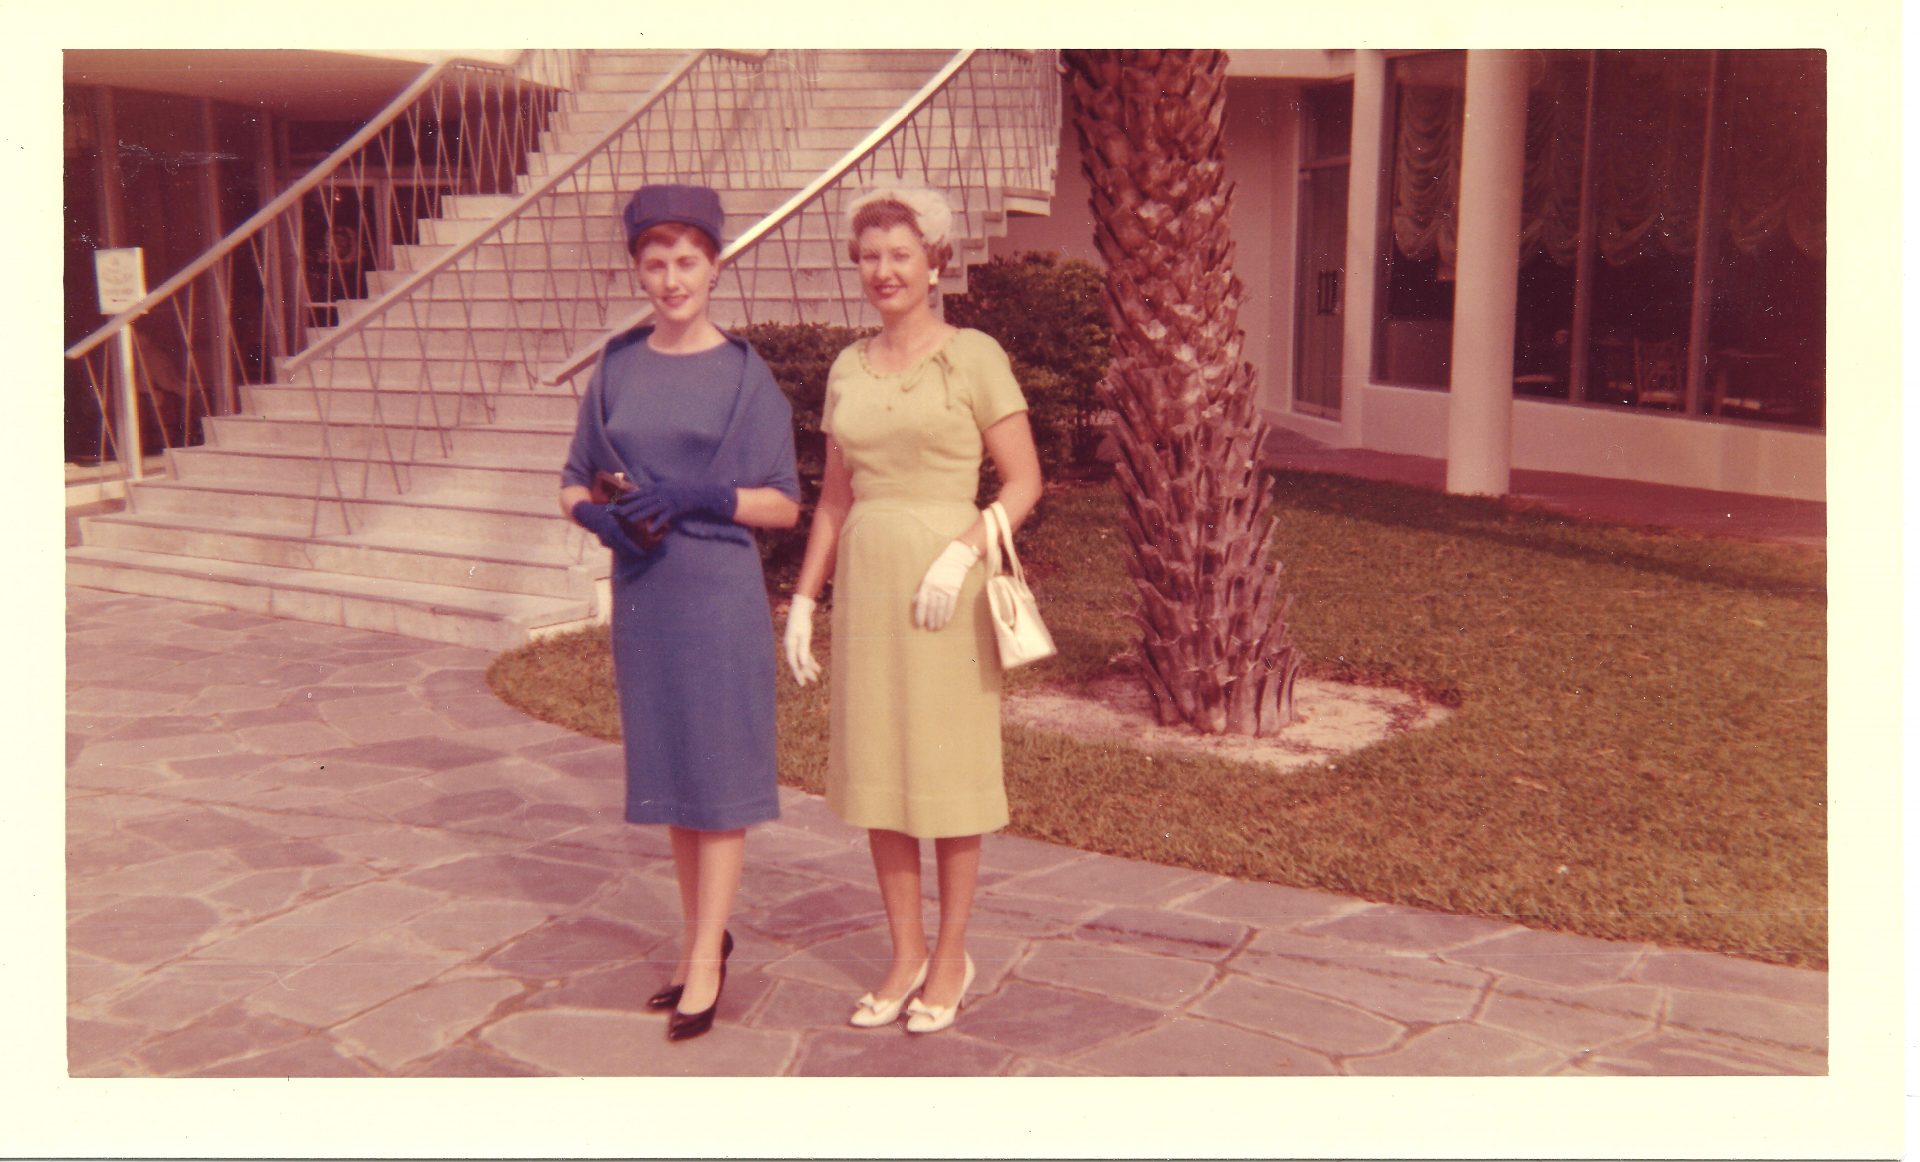 Glenda McKay and Geraldine Dallas at Fountain Bleu in Miami<br />
at a Chiropractic Convention in 1970's.